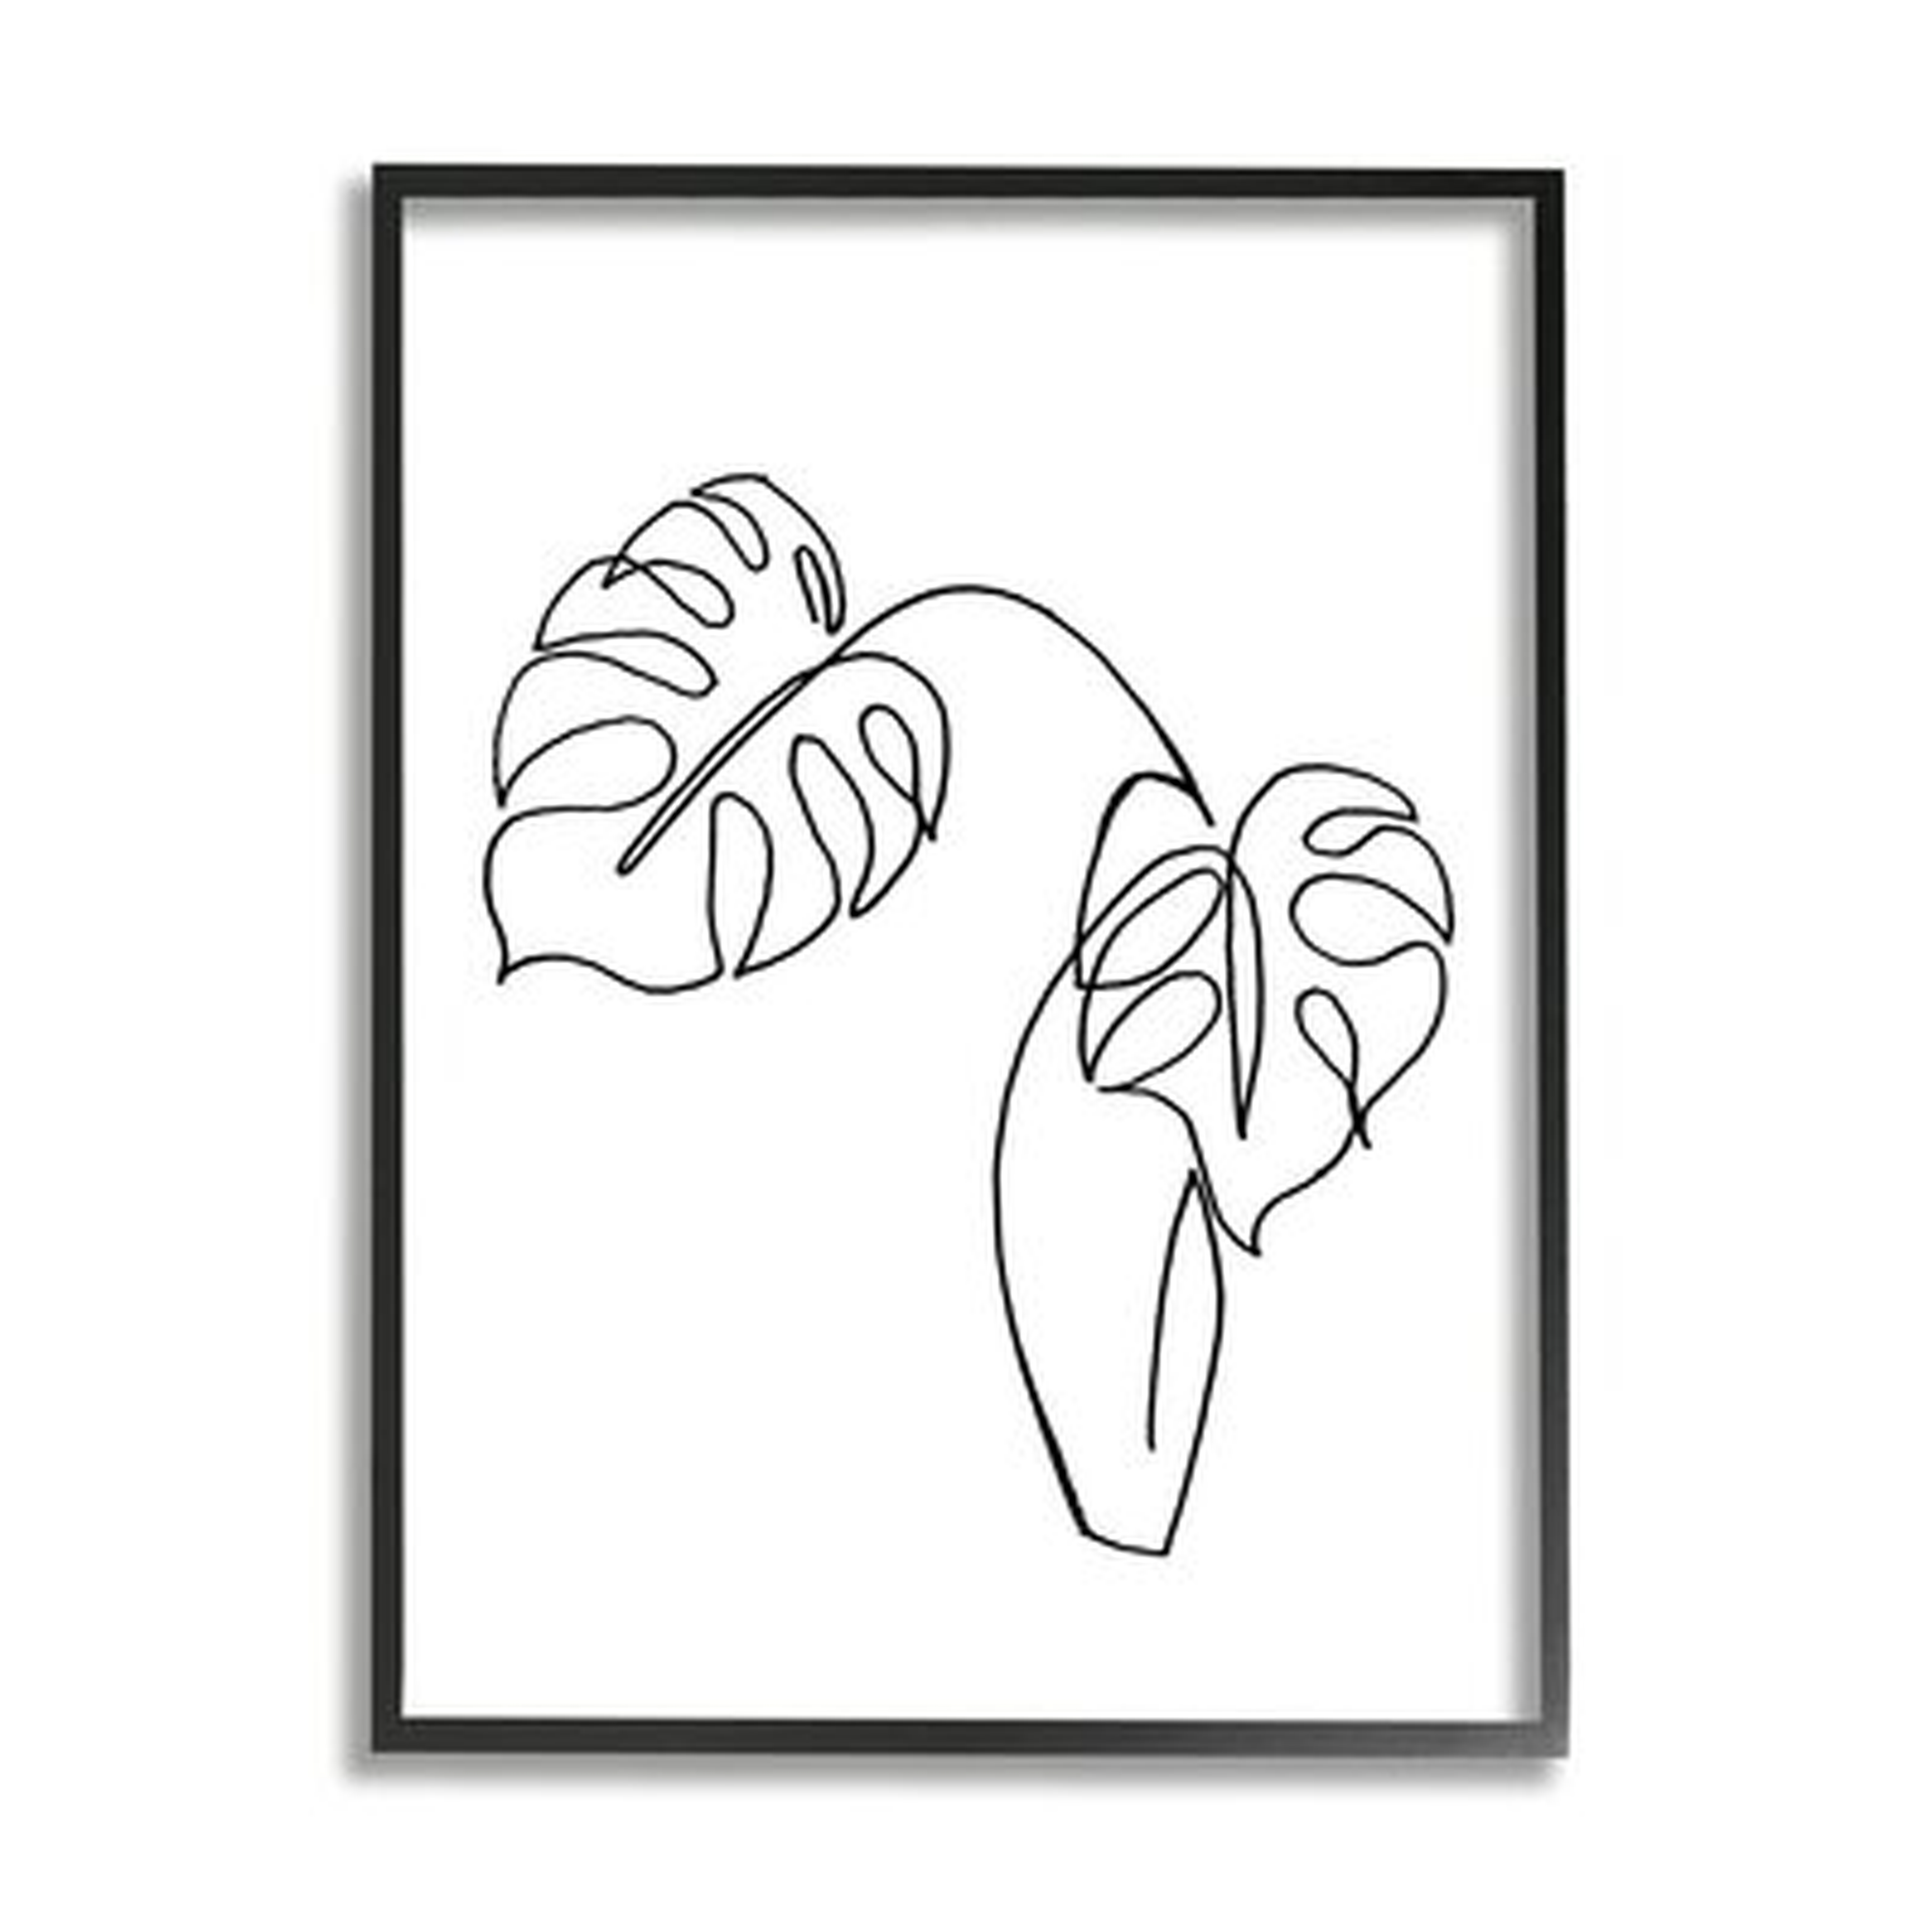 Monstera Plants In Vase Single Line Drawing - Wayfair